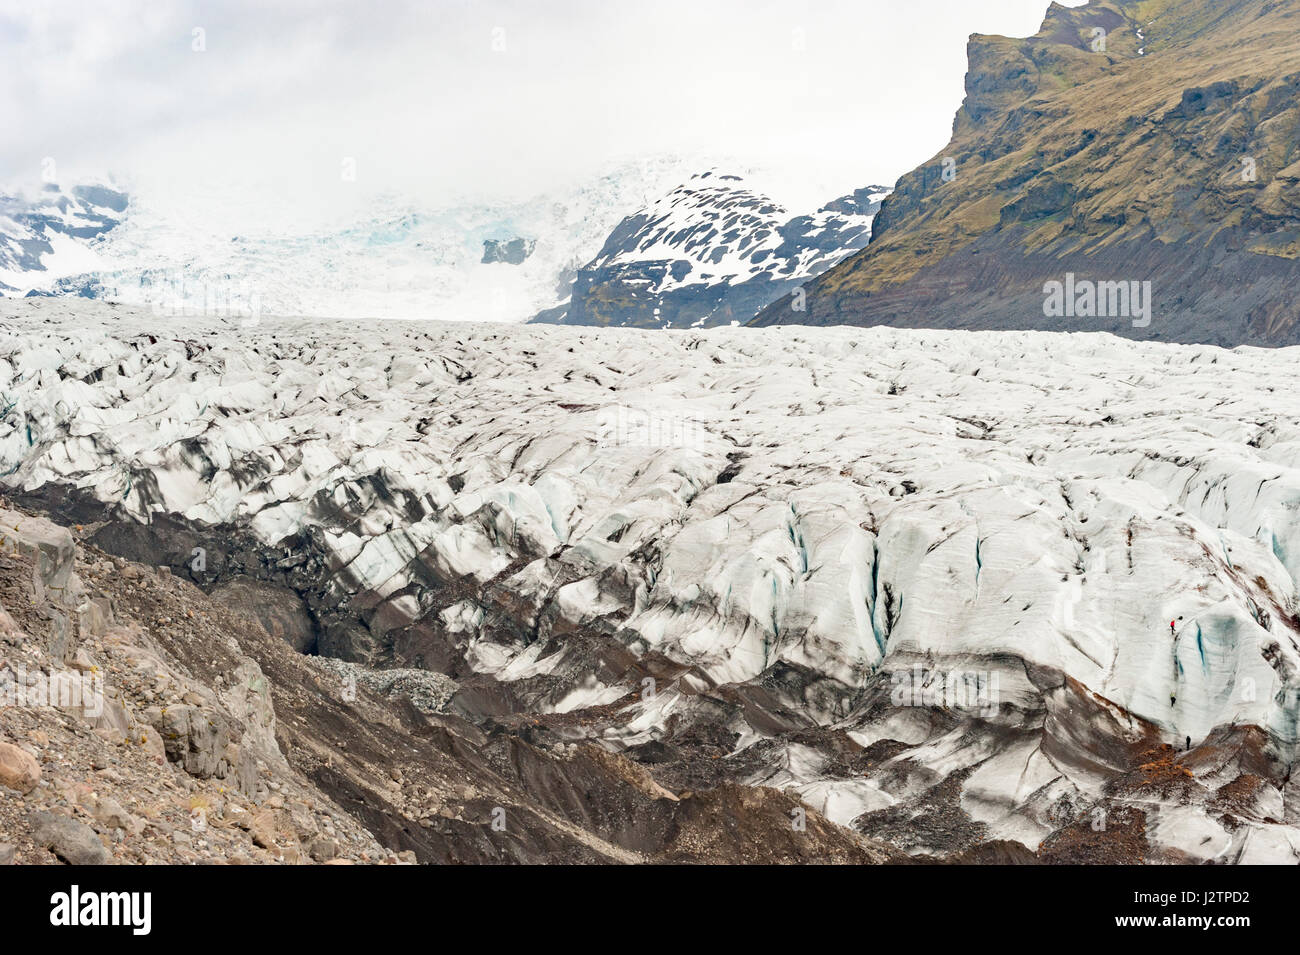 Lontani gli escursionisti scalata di un ghiacciaio, tappo di ghiaccio, Svinafellsjokull, uscita ghiacciaio del ghiacciaio Vatnajokull, Islanda. Foto Stock